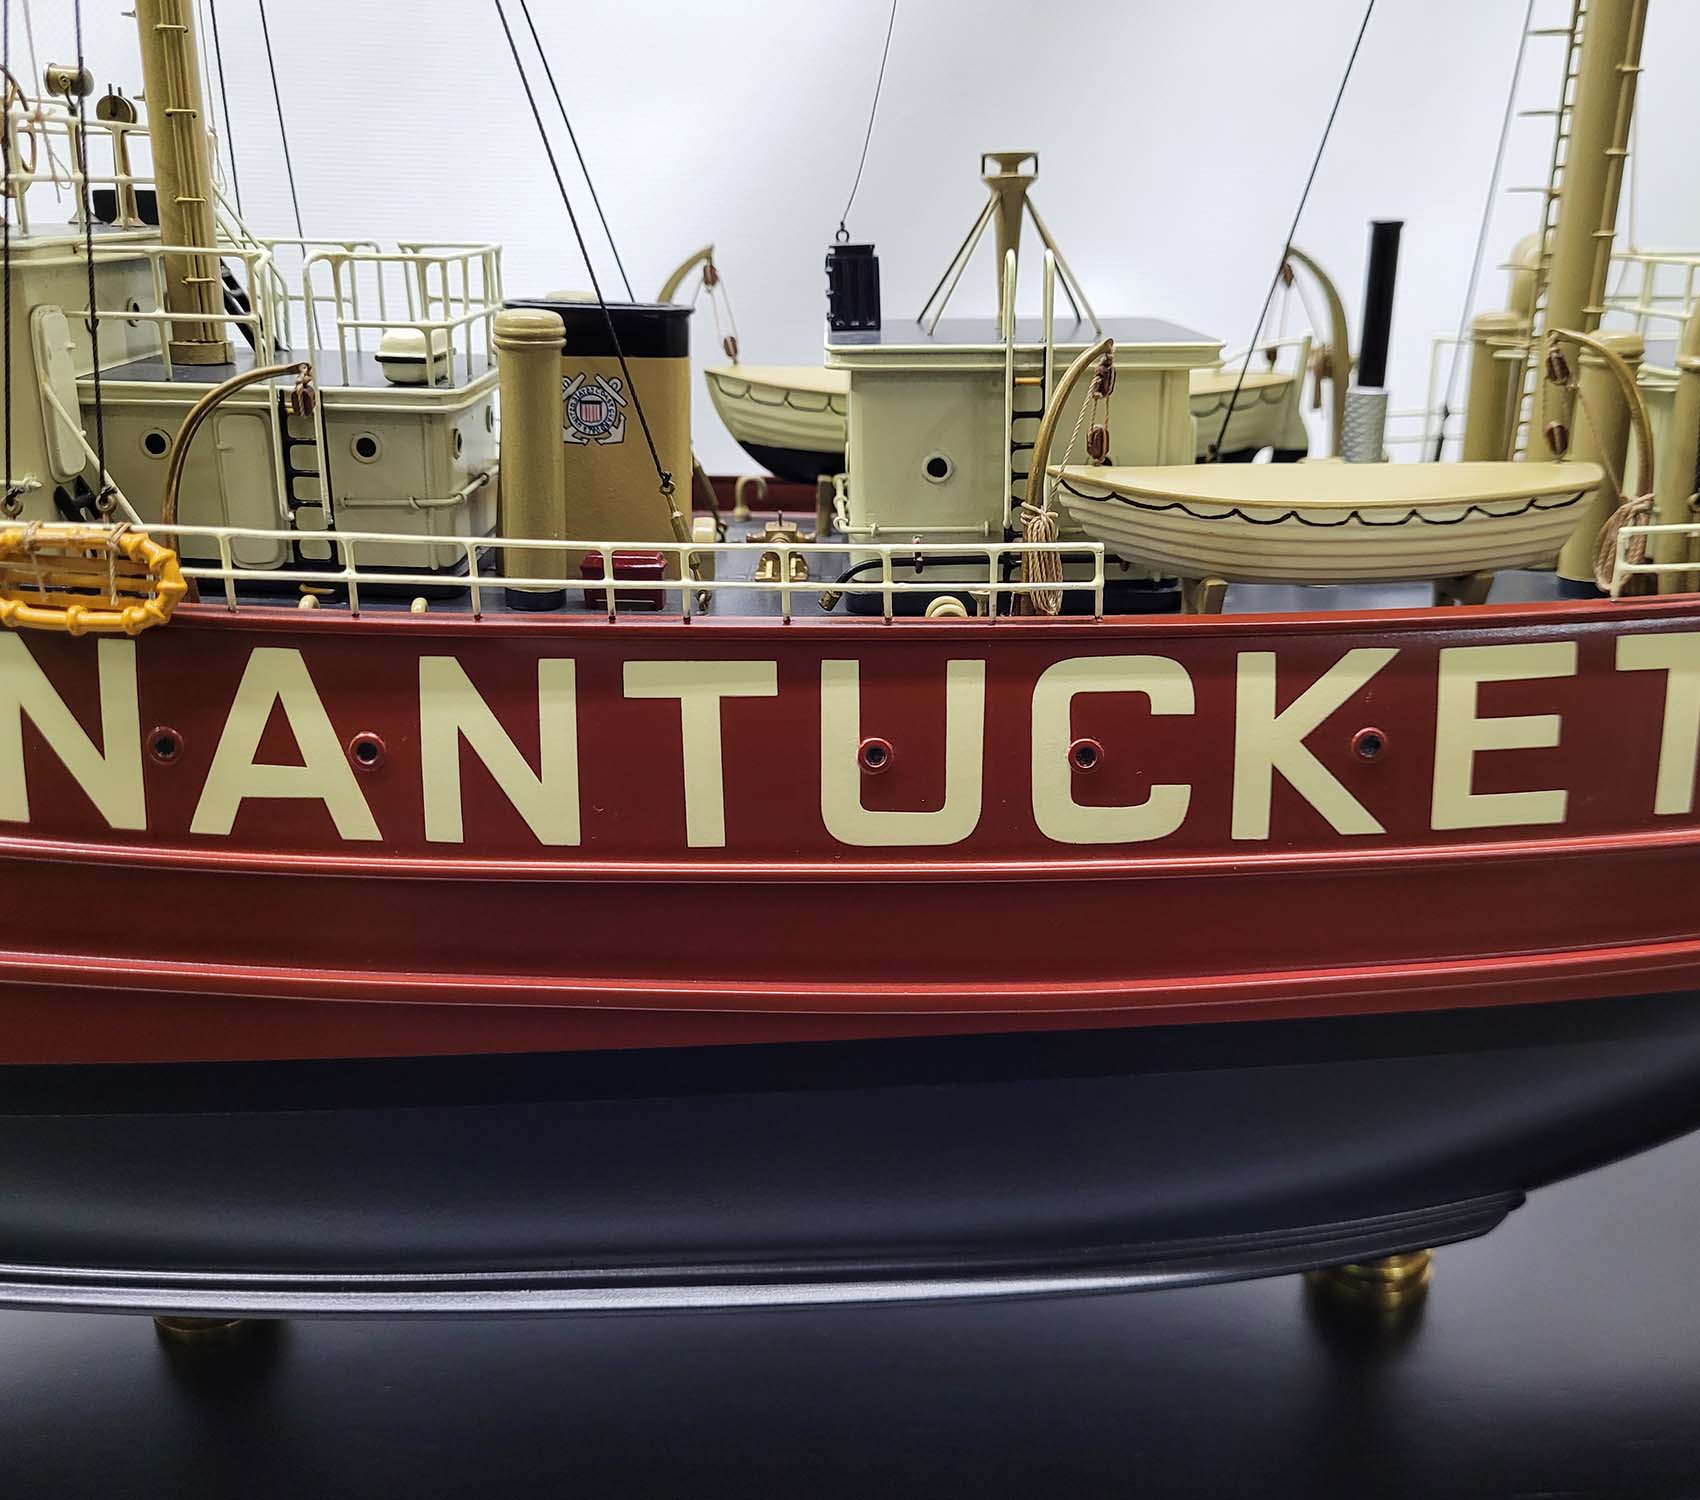 Nantucket Lightship Model LV-112 – Lannan Gallery